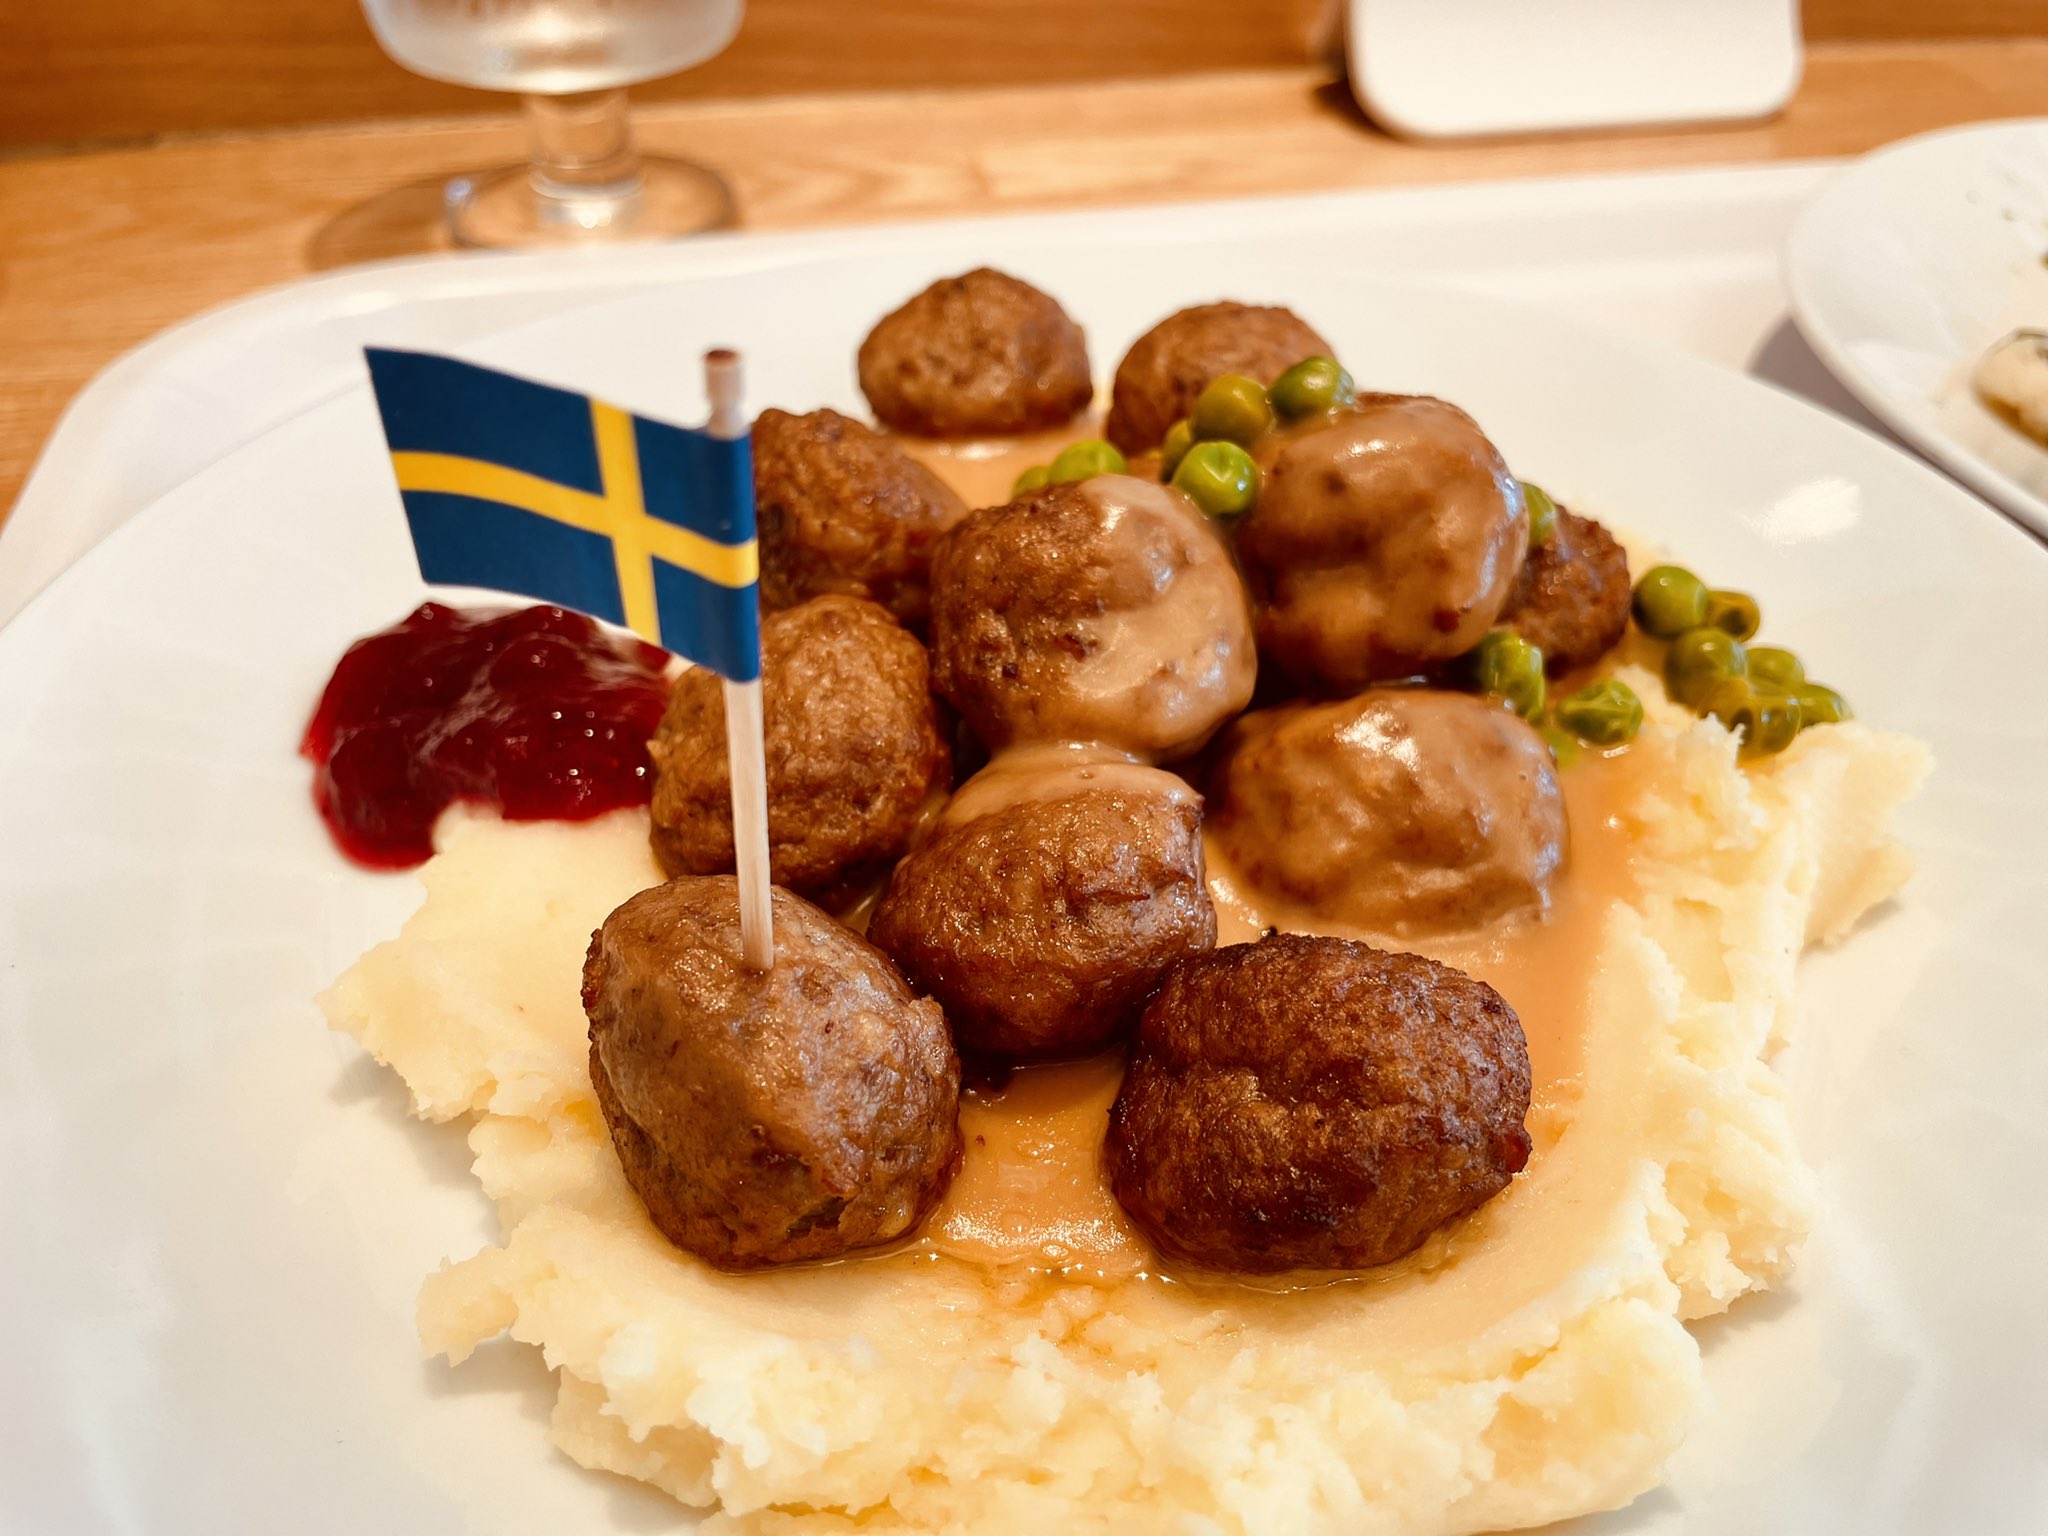 高瀬さやか イケアのスウェーデン料理美味しかったです スウェーデンミートボール サーモンフィレ Ikea イケア イケアレストラン T Co Y5diqs5y8d Twitter